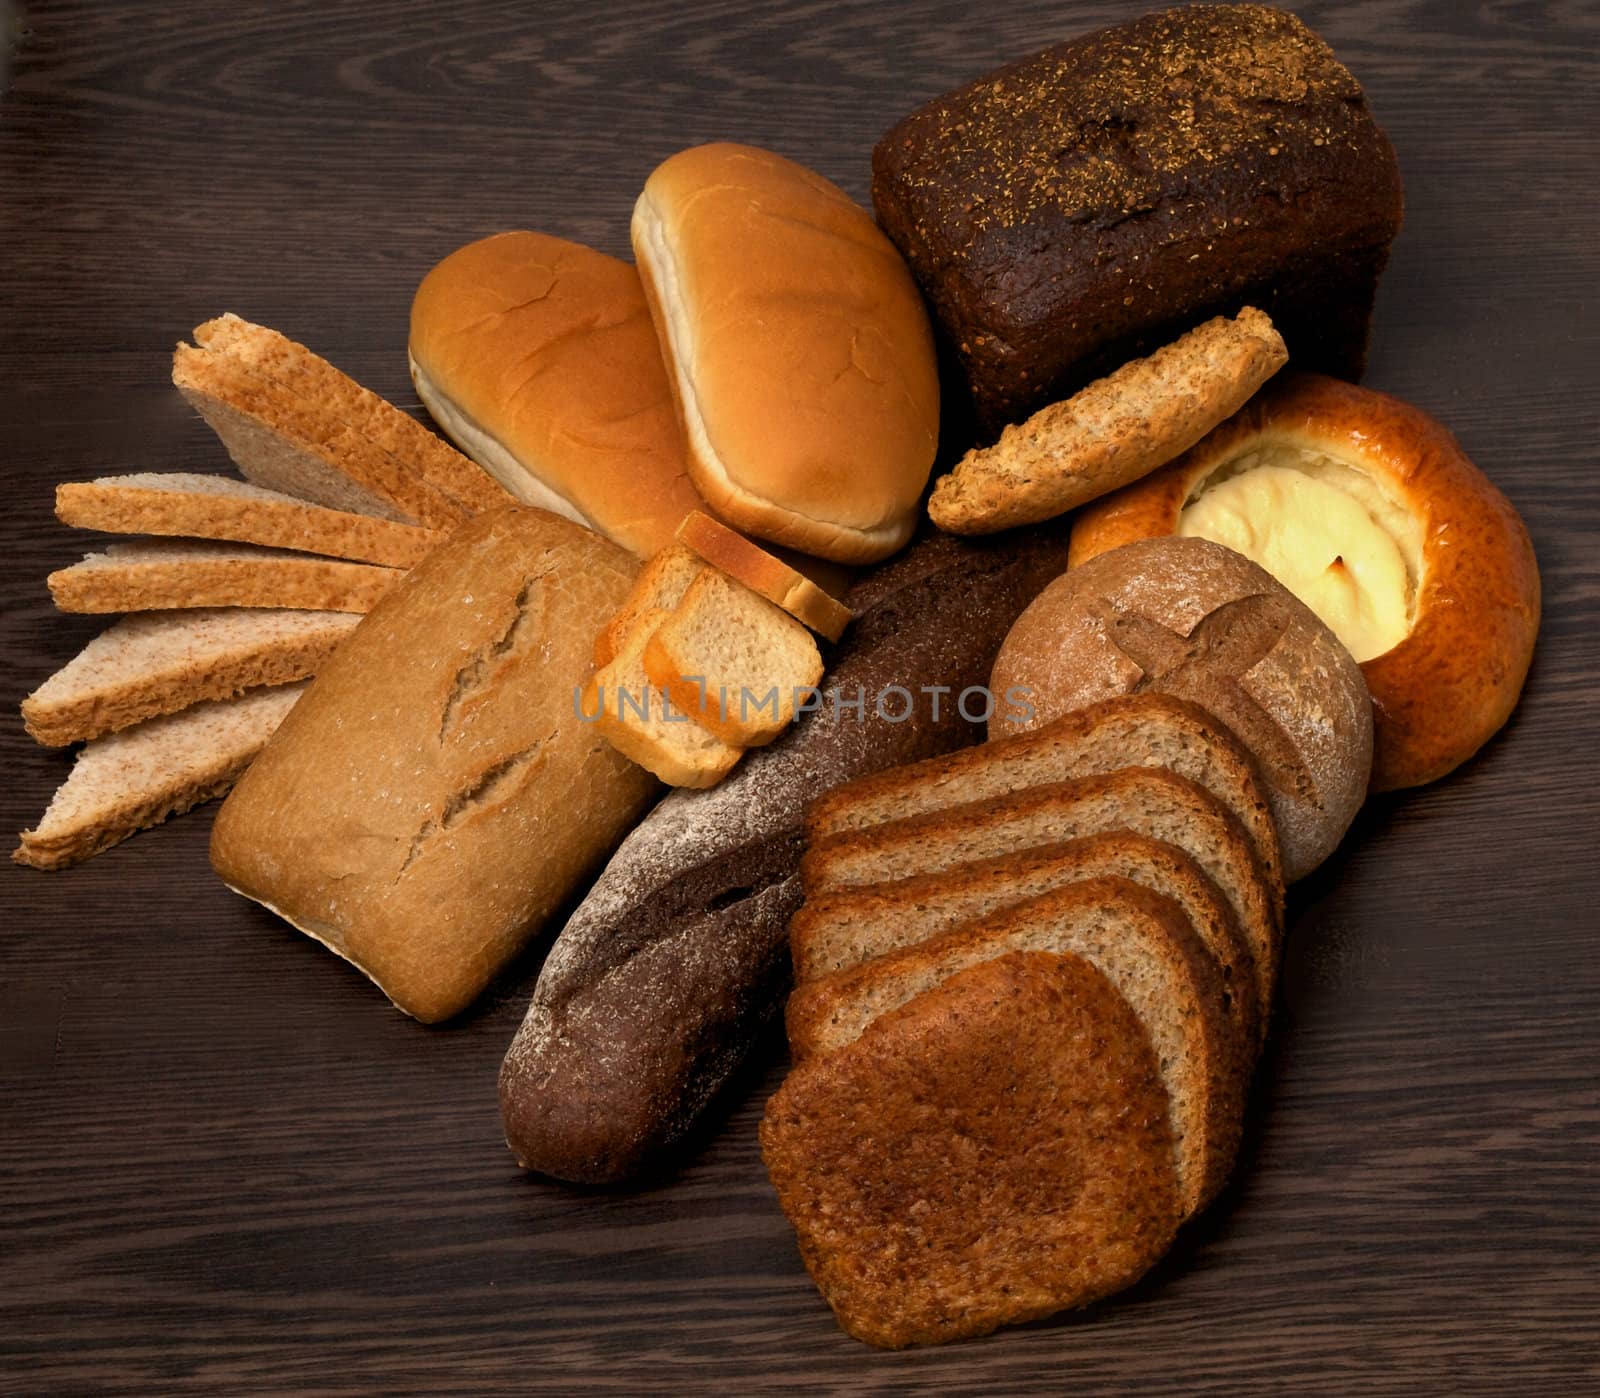 Arrangement of Various Bread by zhekos